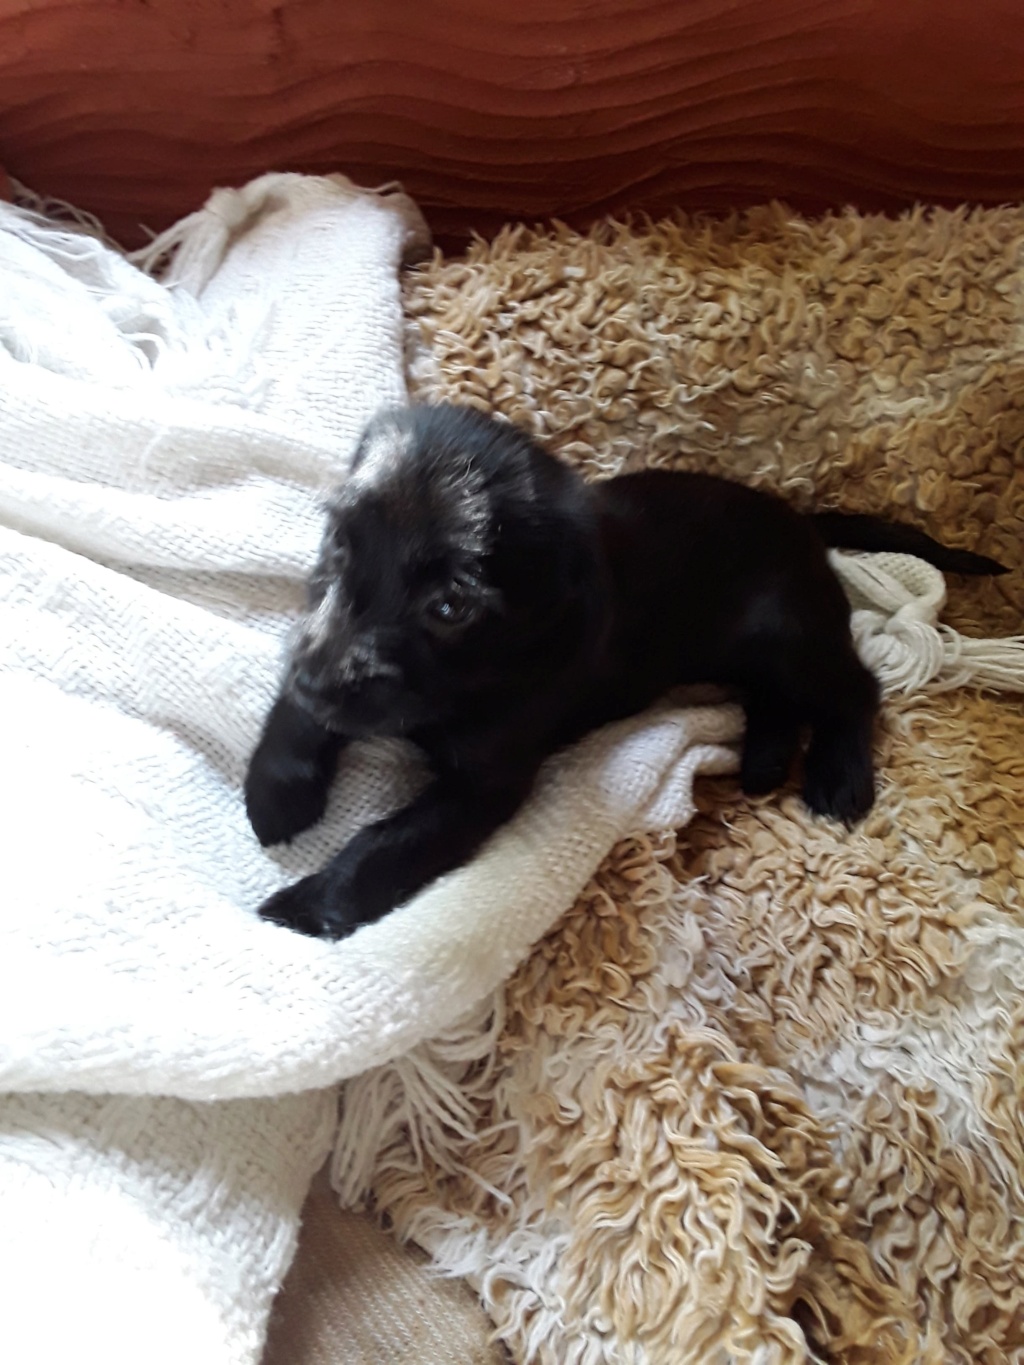 PRISKA, chiot femelle noire de 2,5 mois environ pour 1,9 Kg - Réservée à Sandrine 29434810